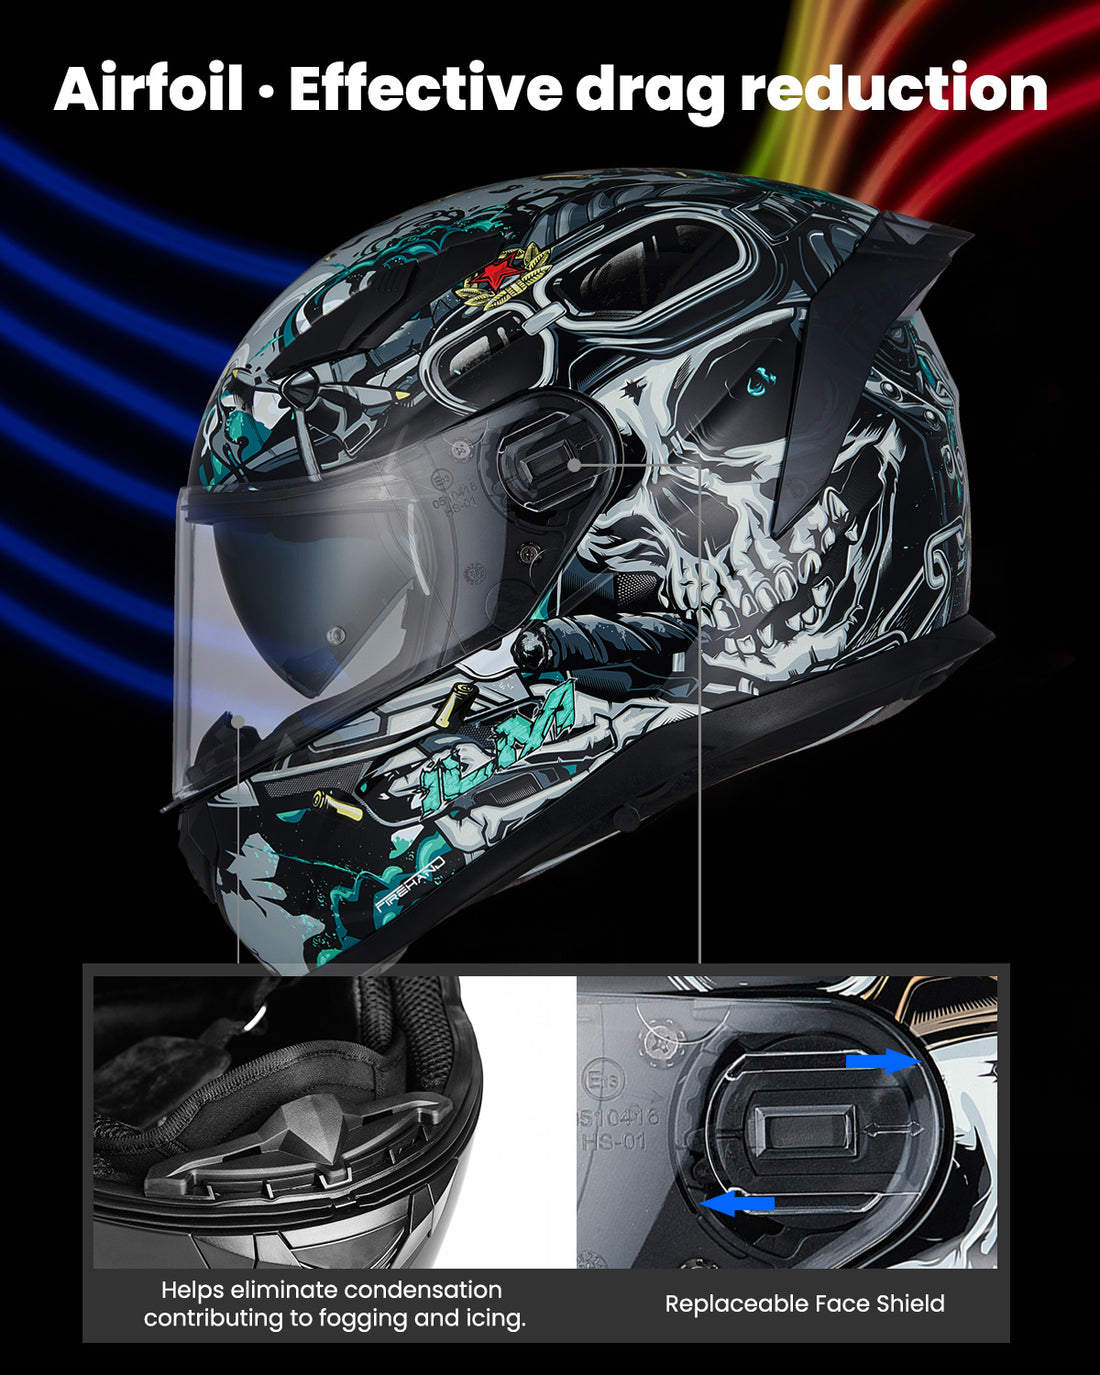 ILM Full Face MIPS Motorcycle Helmet Model 129M